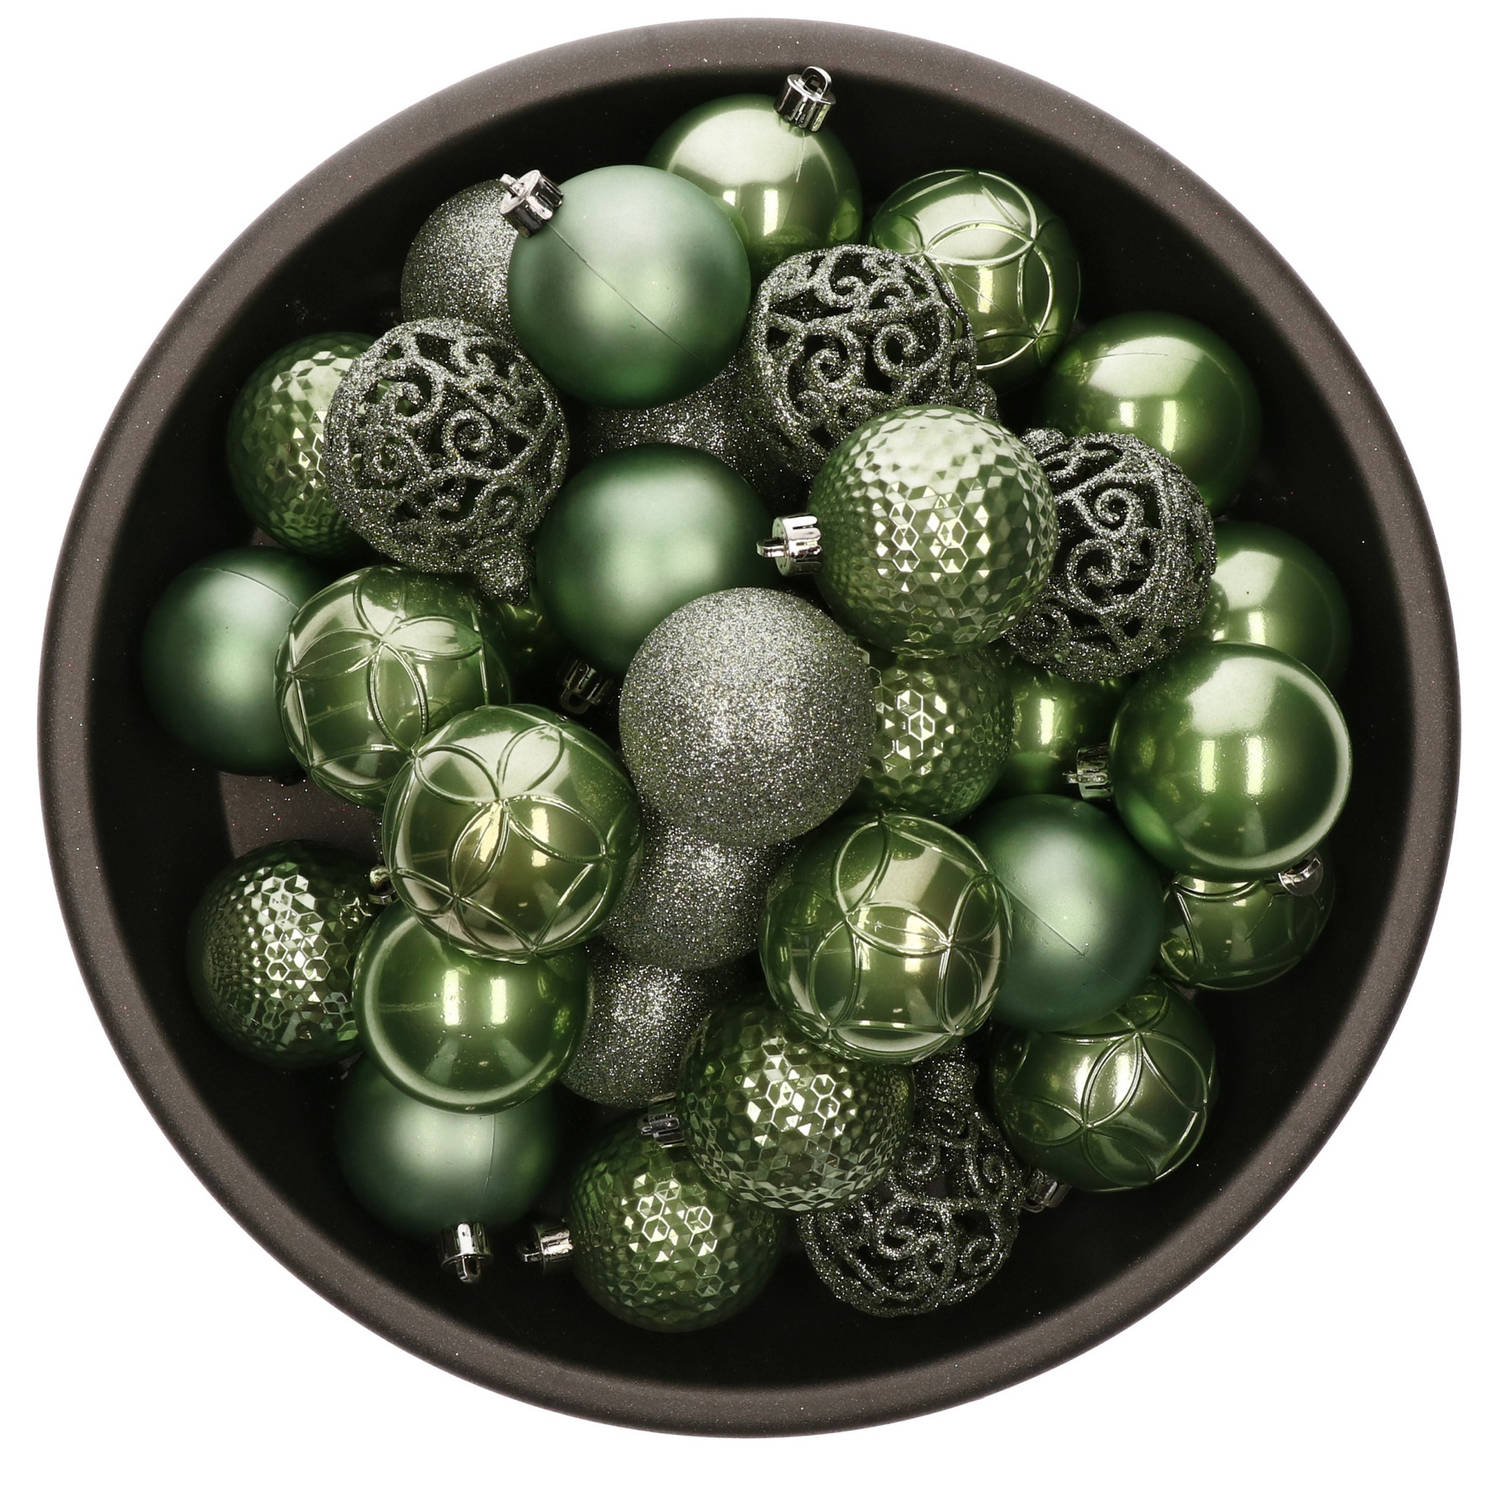 Roestig Vijandig ontwikkelen 37x stuks kunststof kerstballen salie groen 6 cm glans/mat/glitter mix -  Kerstbal | Blokker